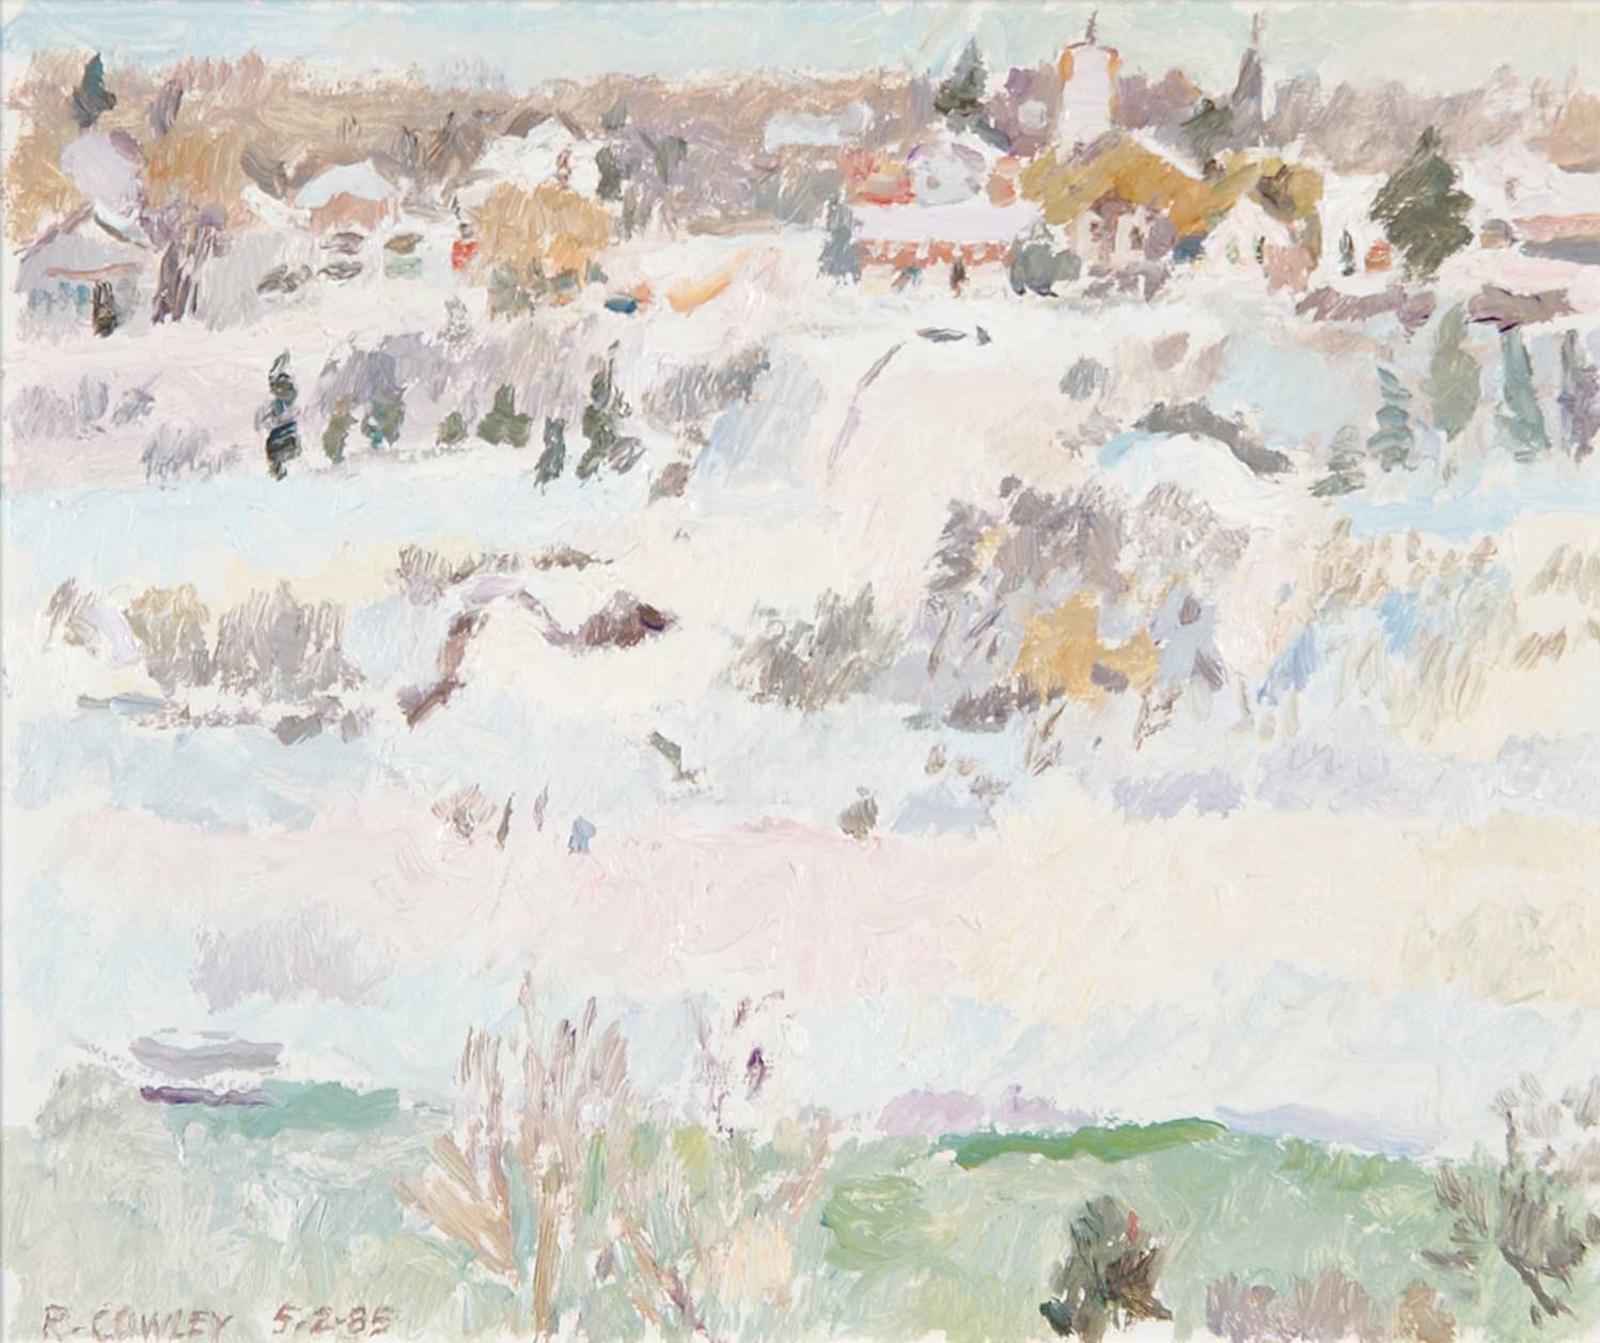 Reta Madeline Cowley (1910-2004) - River, Ice and Bank - Saskatoon